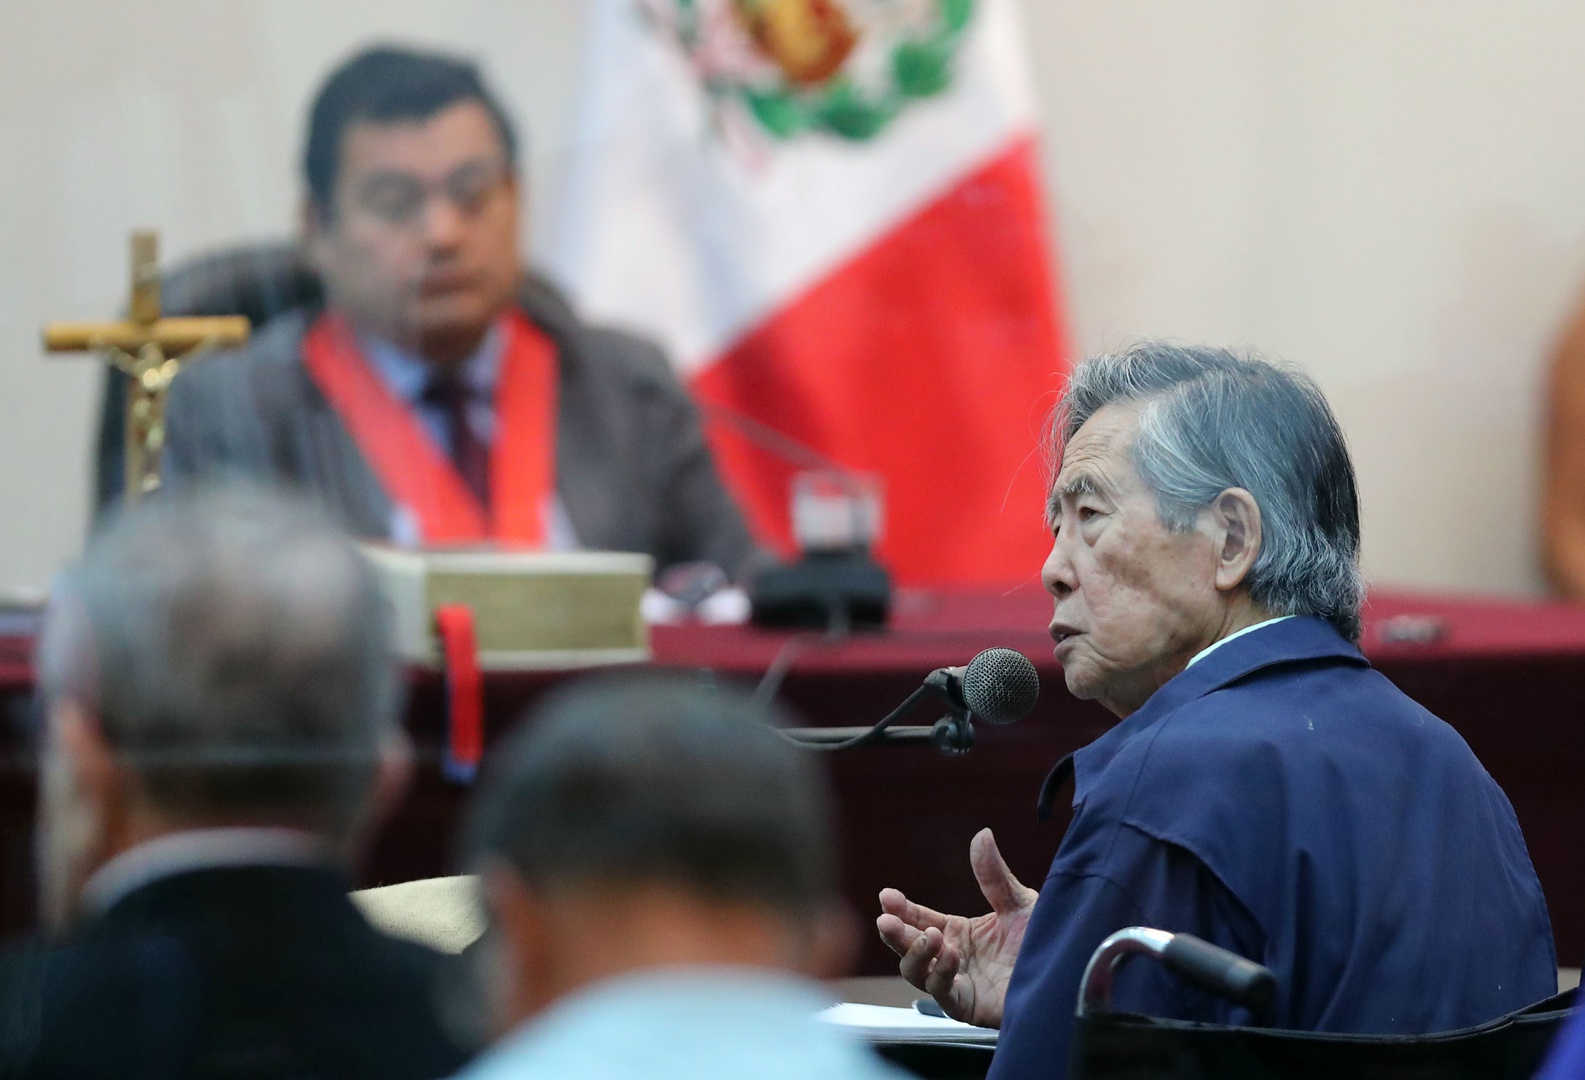 el procurador peruano confirma que fujimori debe al estado unos 14,7 millones de dólares